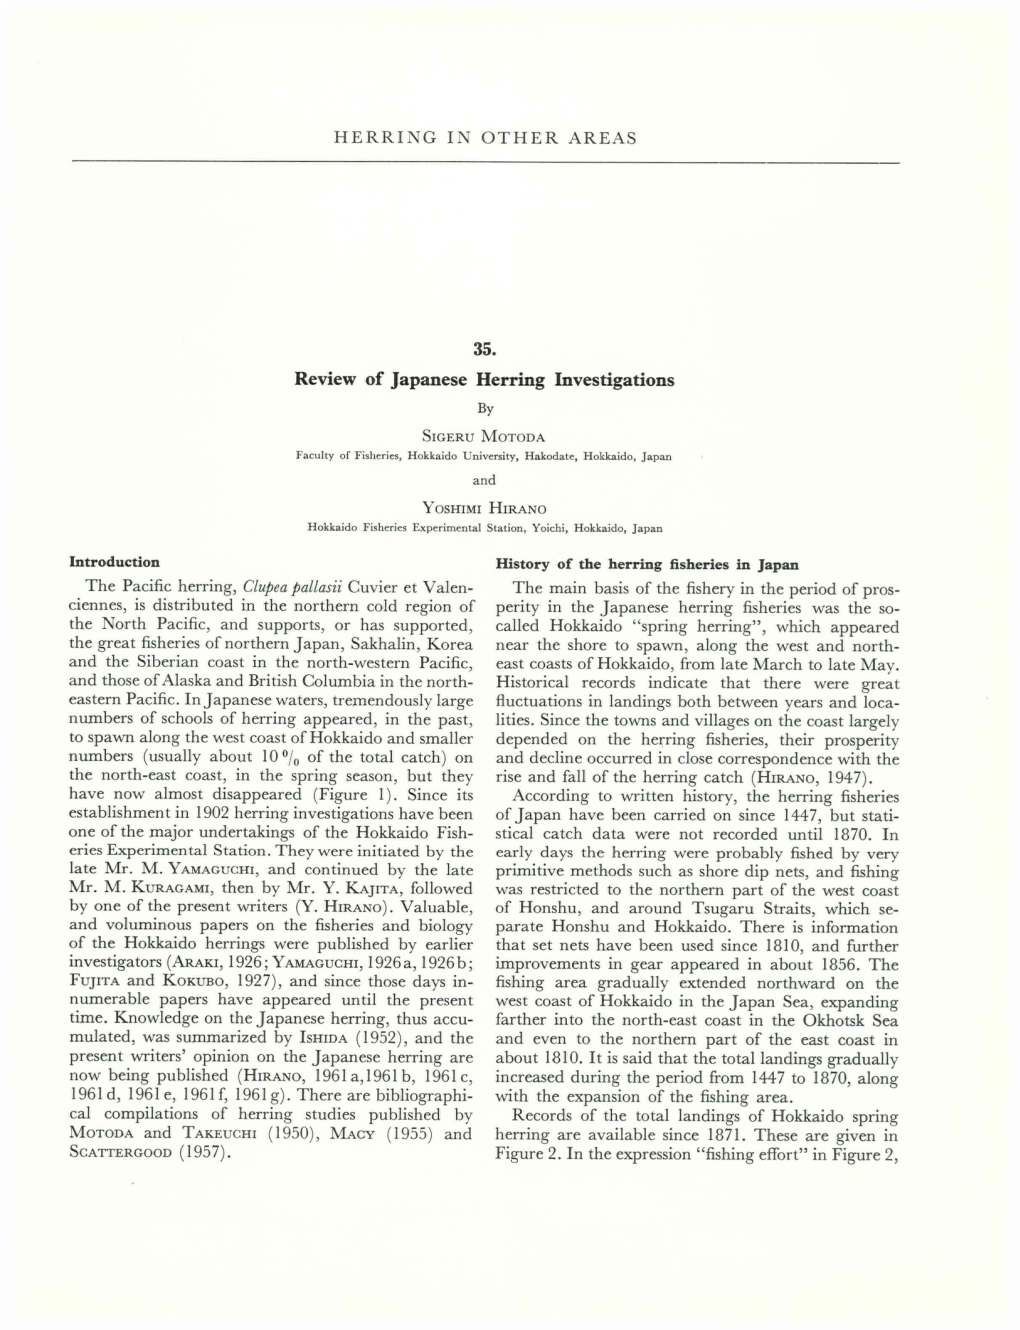 Herring Symposium 1961